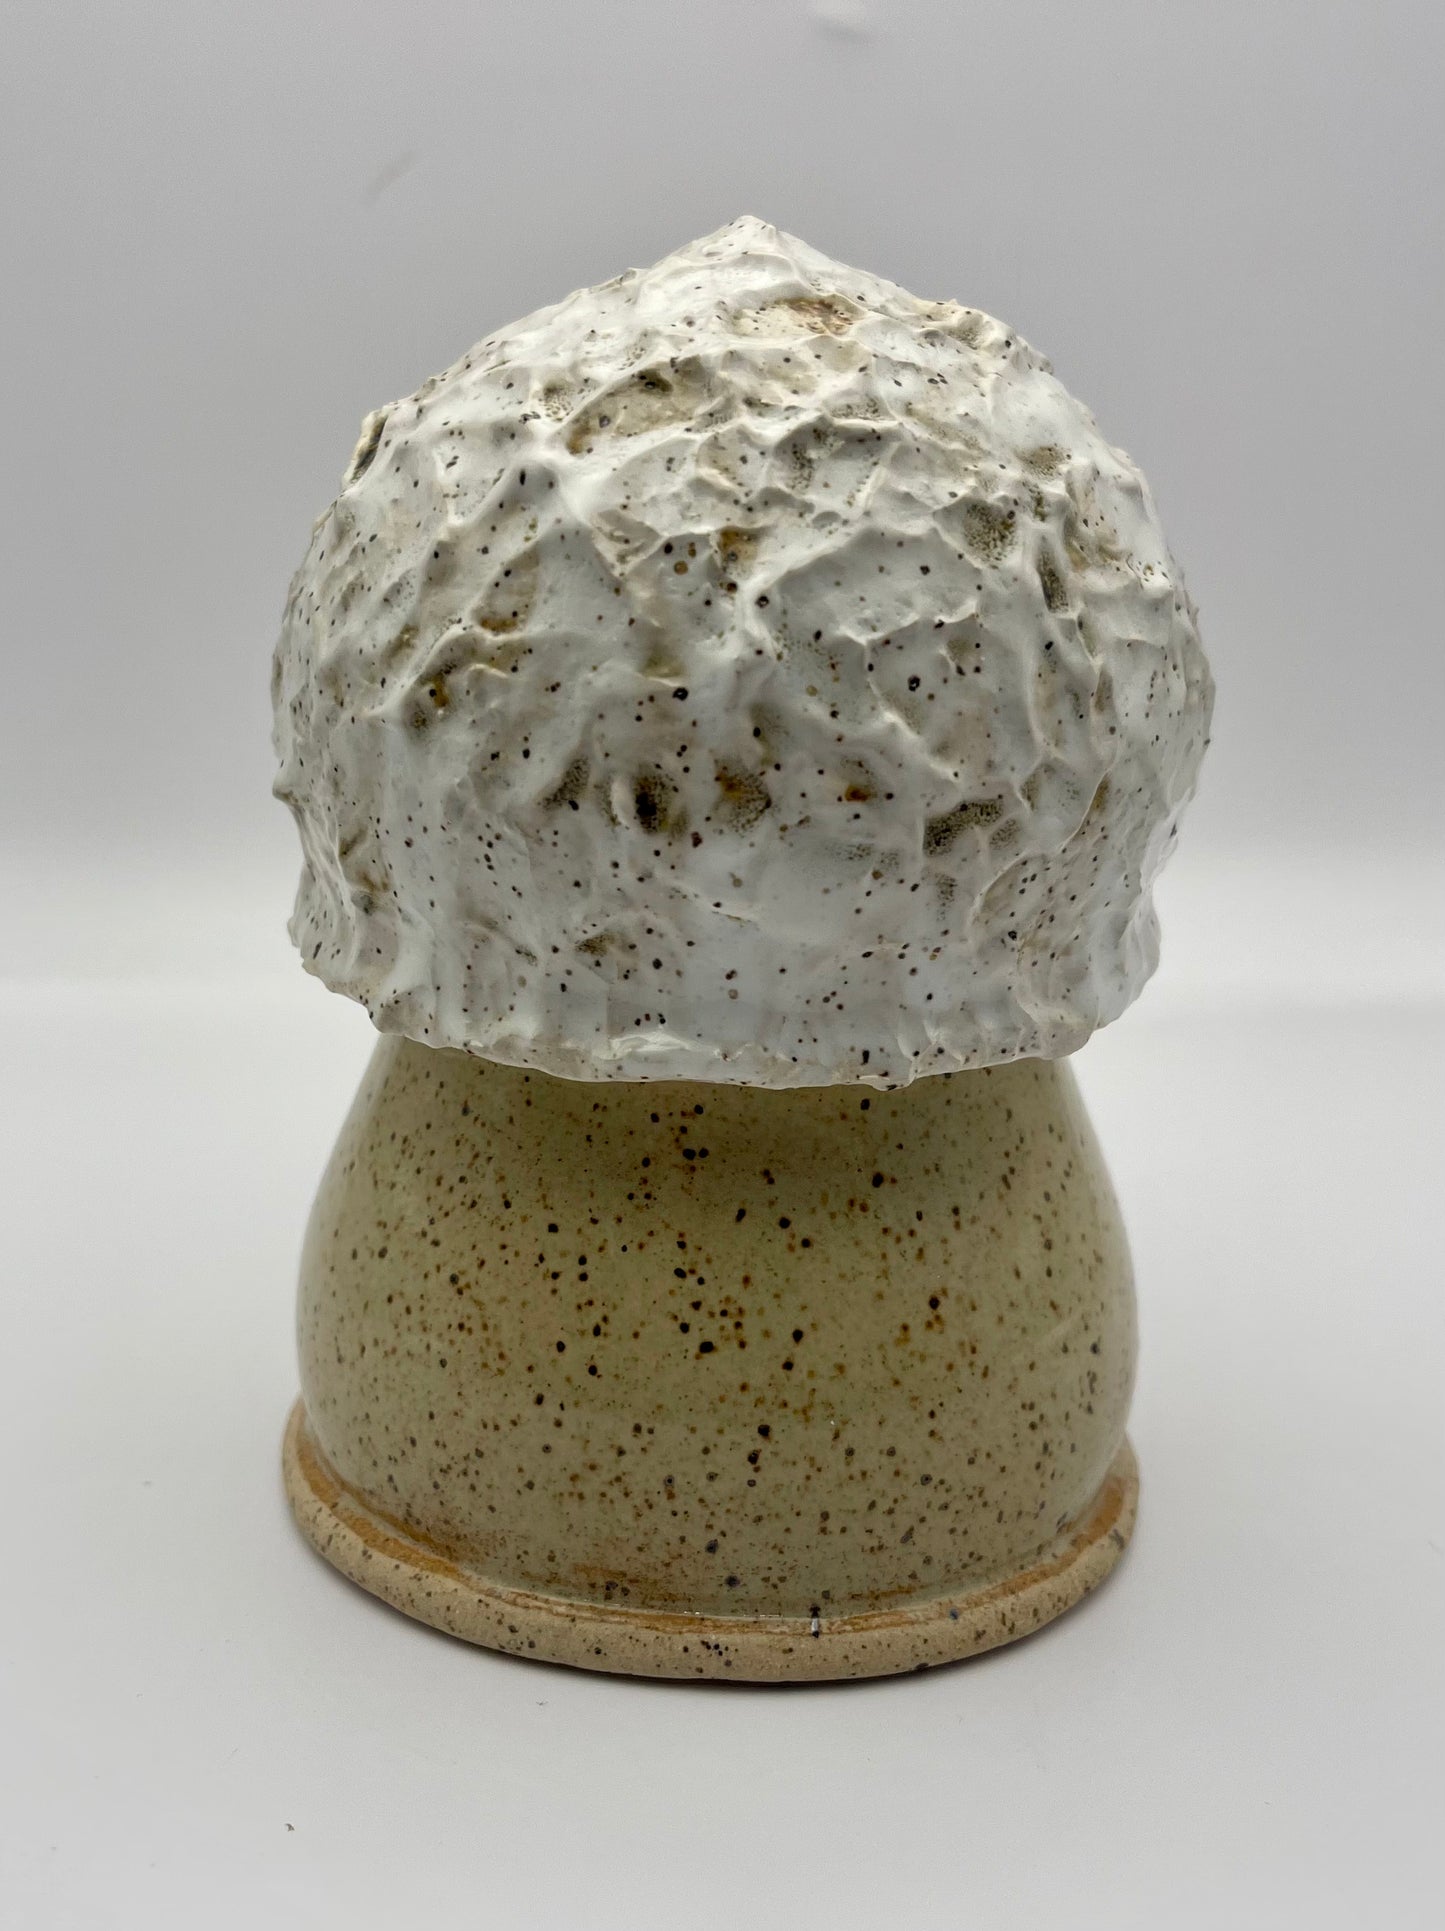 Spunky Sloth Ceramics- 7" Puff Ball Mushroom Gnome